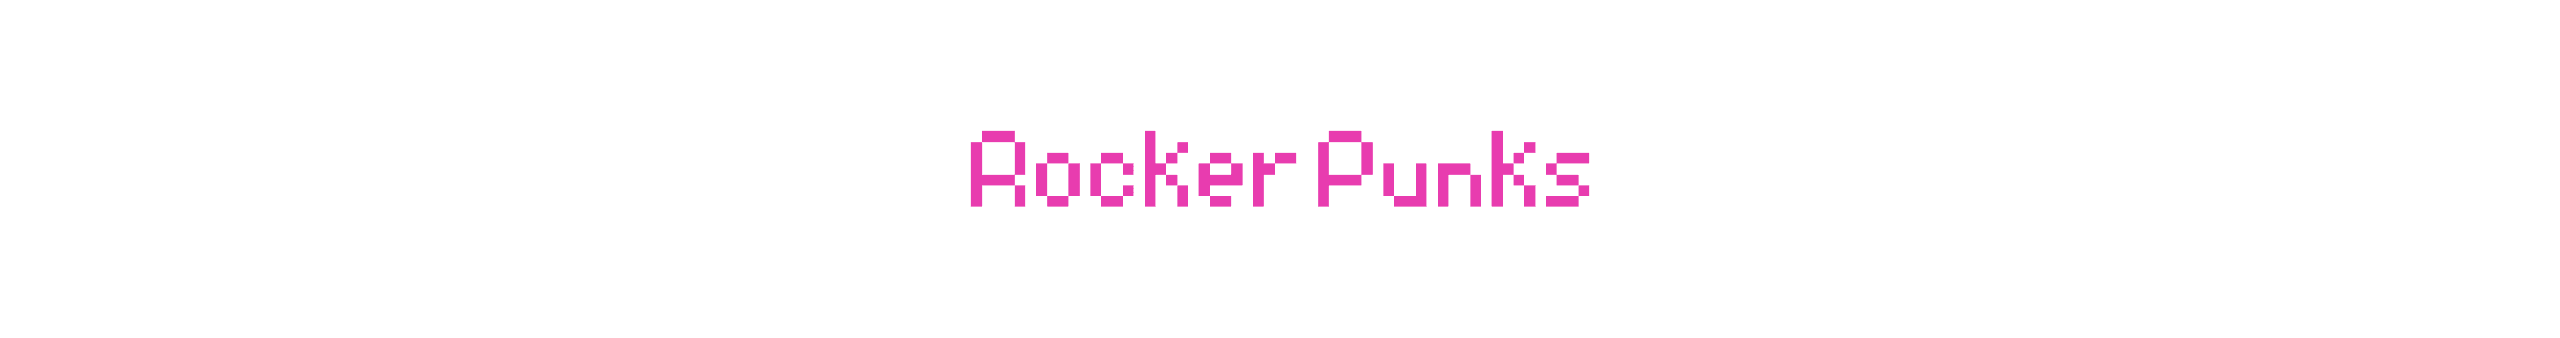 RockerPunks